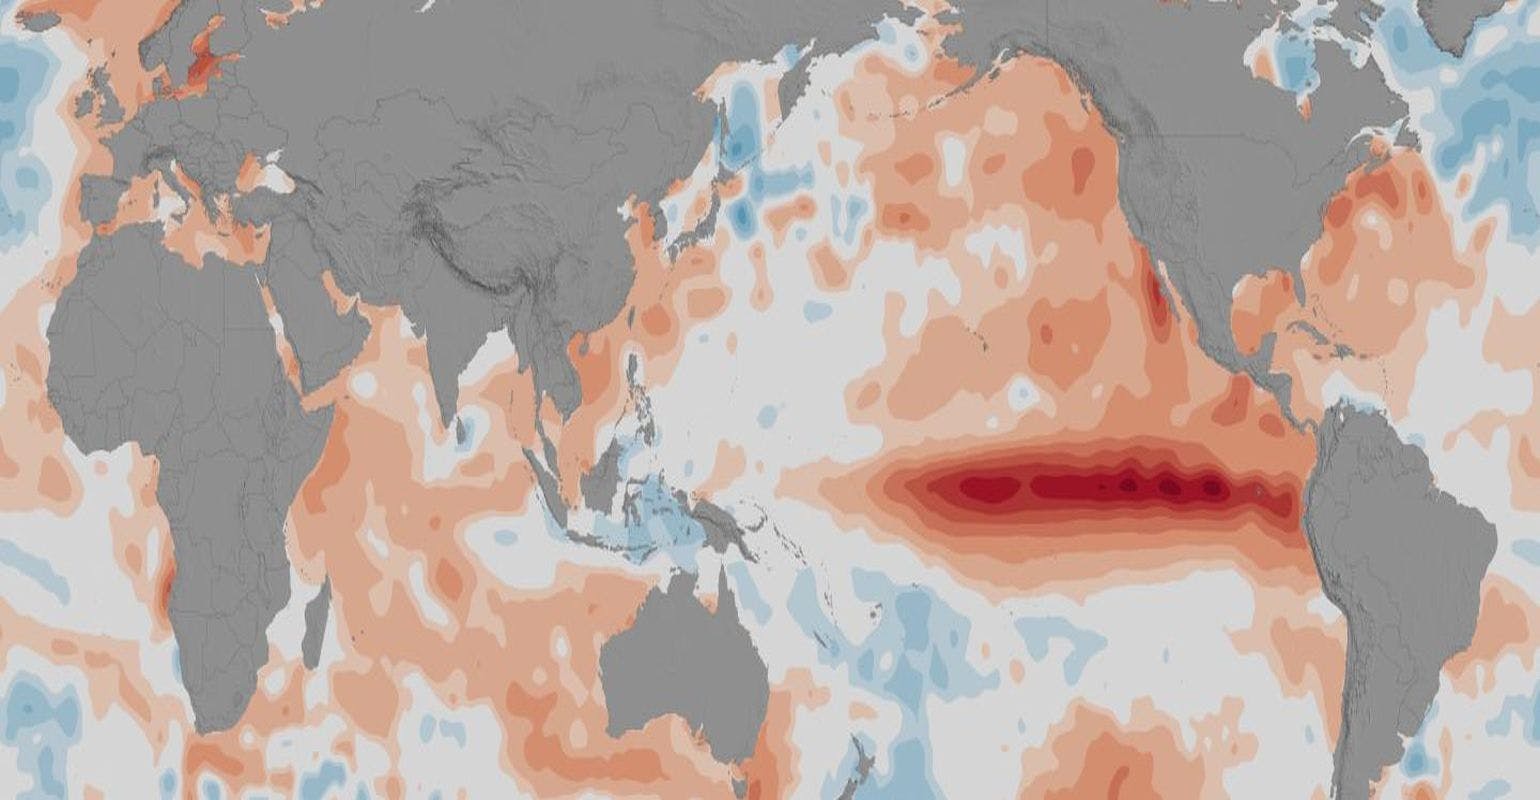 2015-2016 El Niño Triggered Disease Outbreaks Across Globe